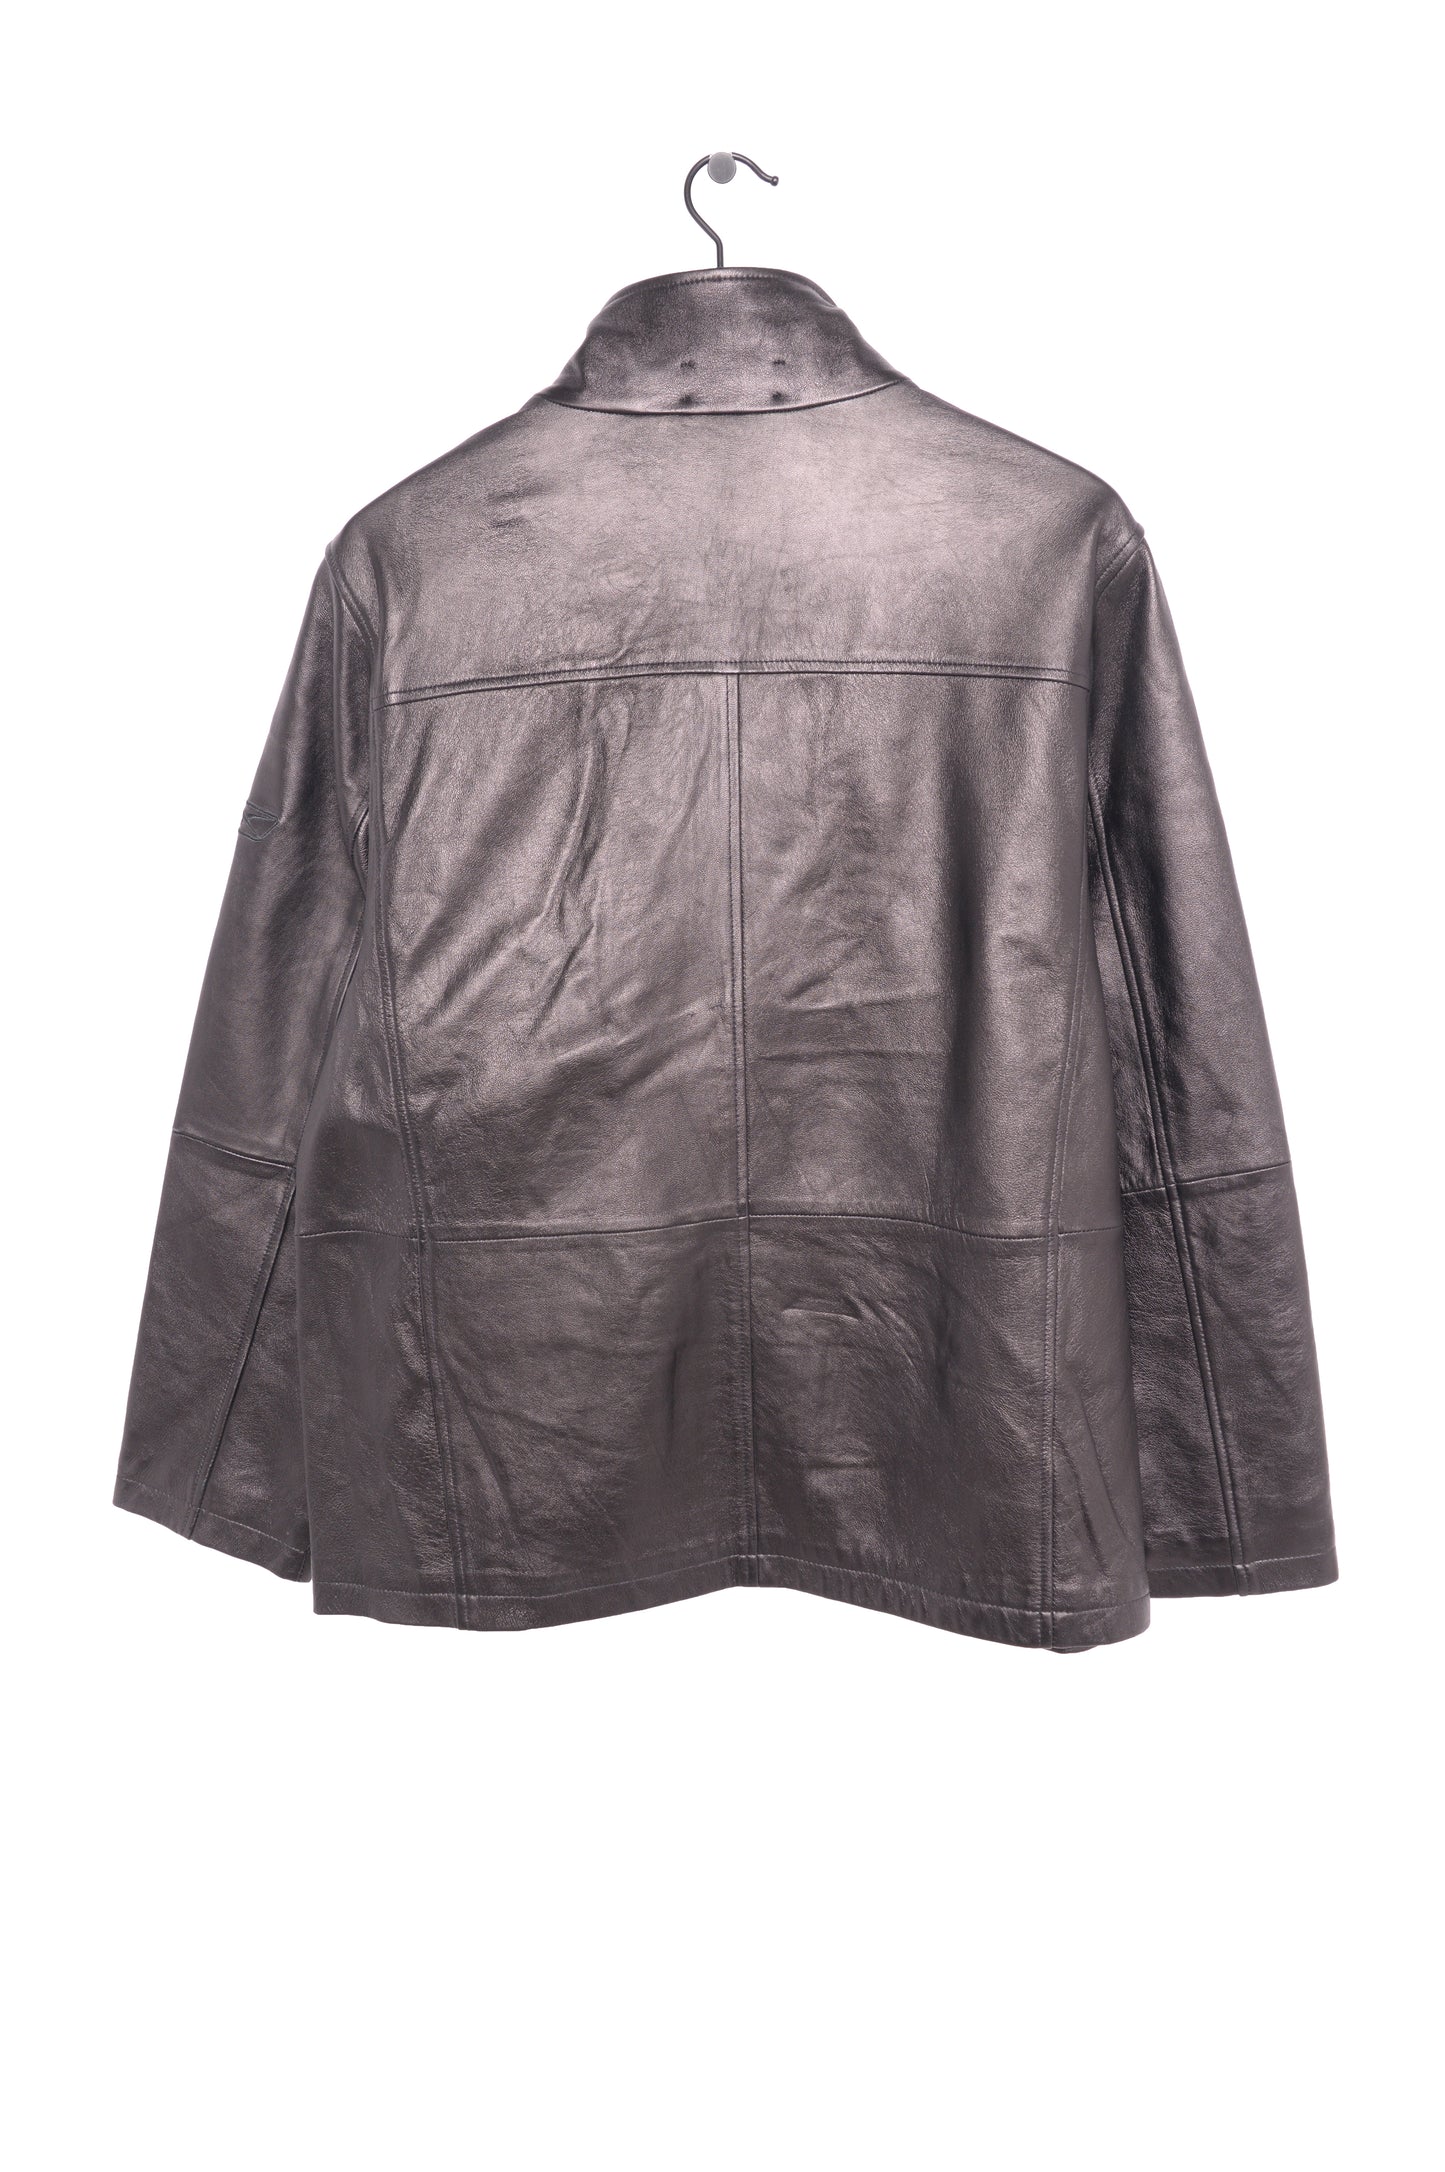 Las Vegas Raiders Soft Leather Jacket